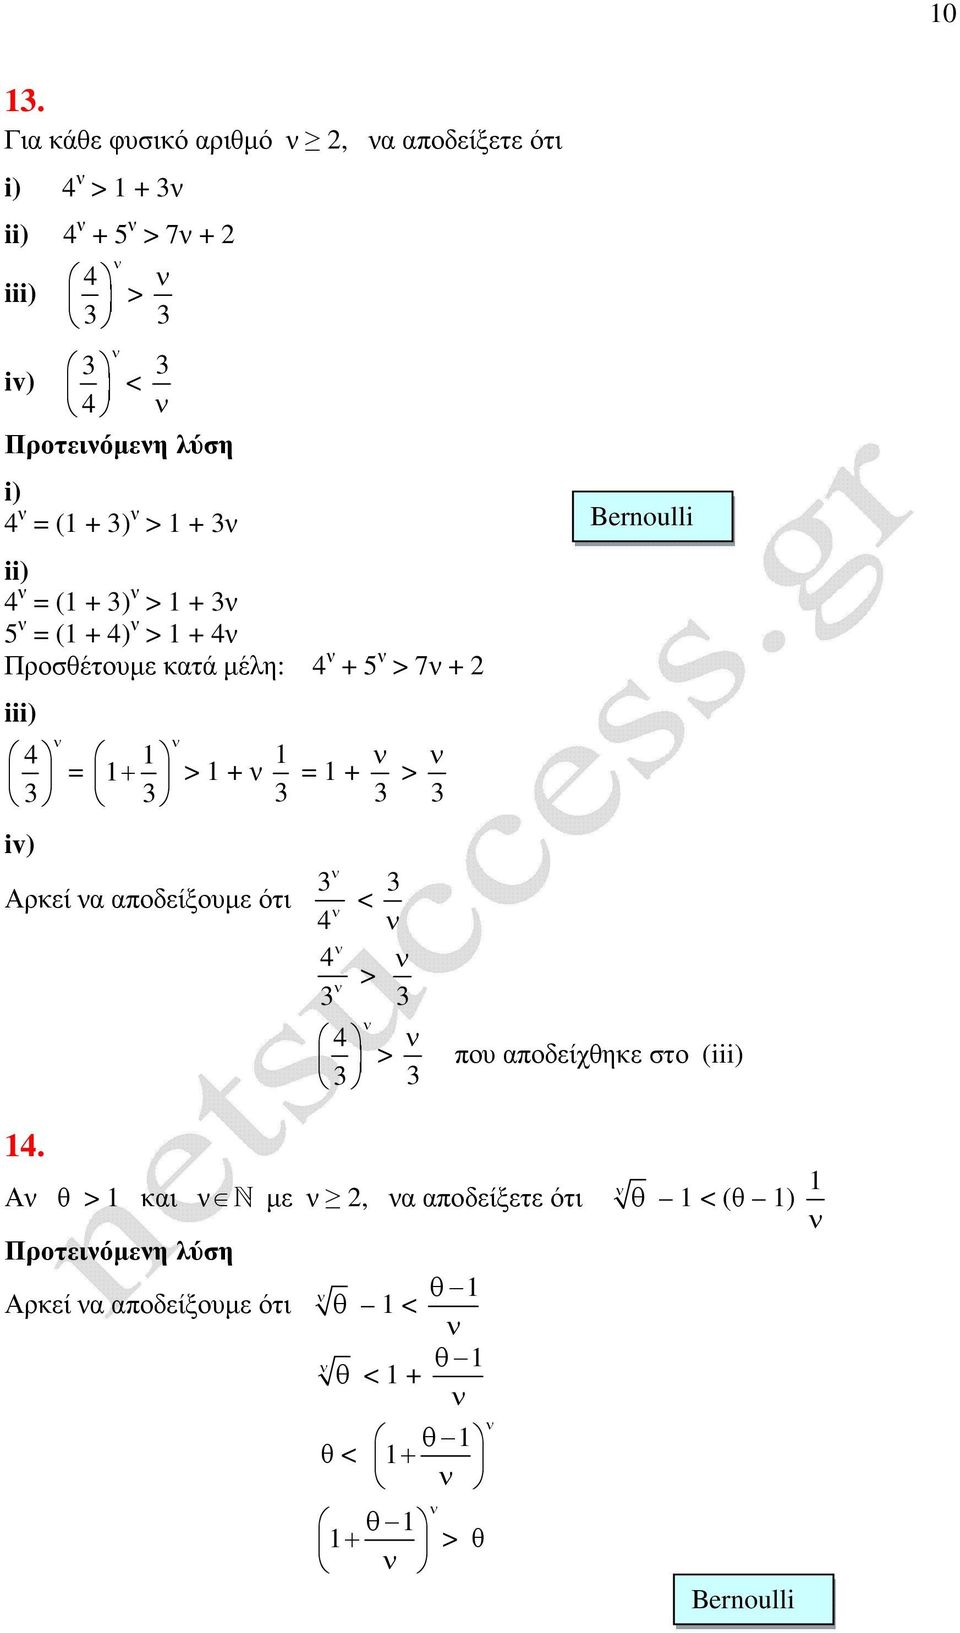 Αρεί α αποδείξουµε ότι < > > Bernoulli που αποδείχθηε στο (iii) 1.